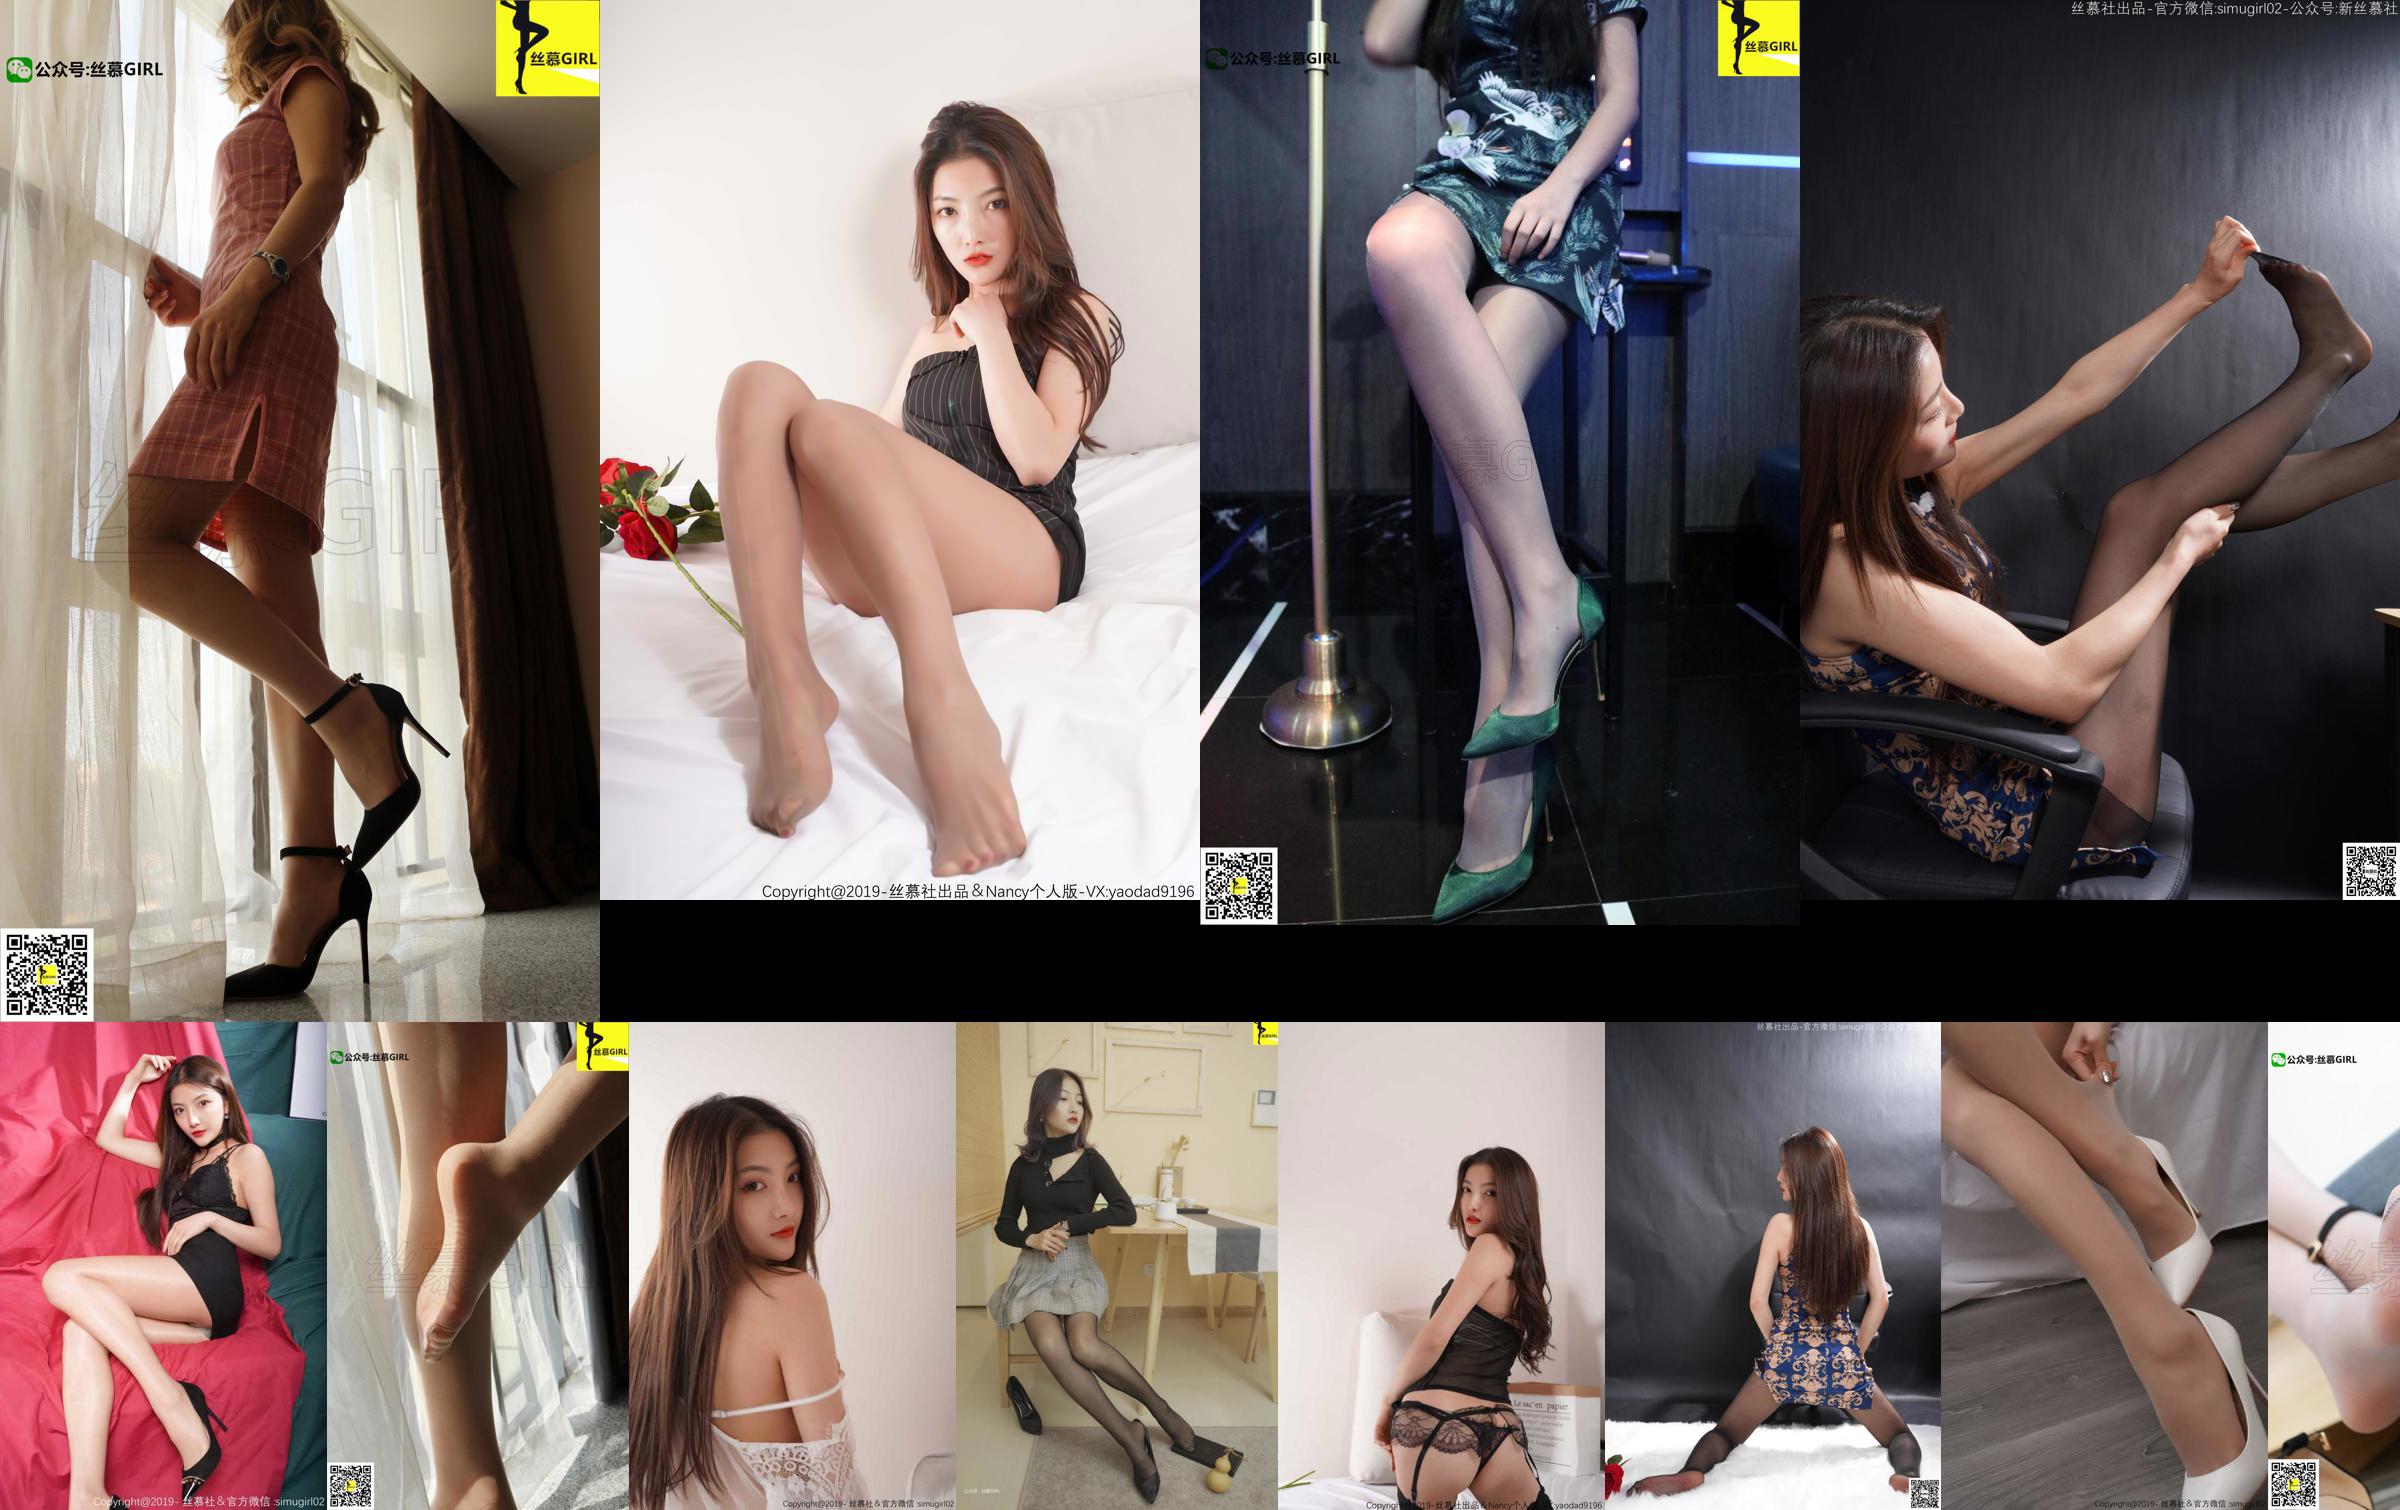 [Simu] SM003 Xia Zinan "Xia Zinan's Cheongsam Beautiful Feet" No.821dcc Page 2